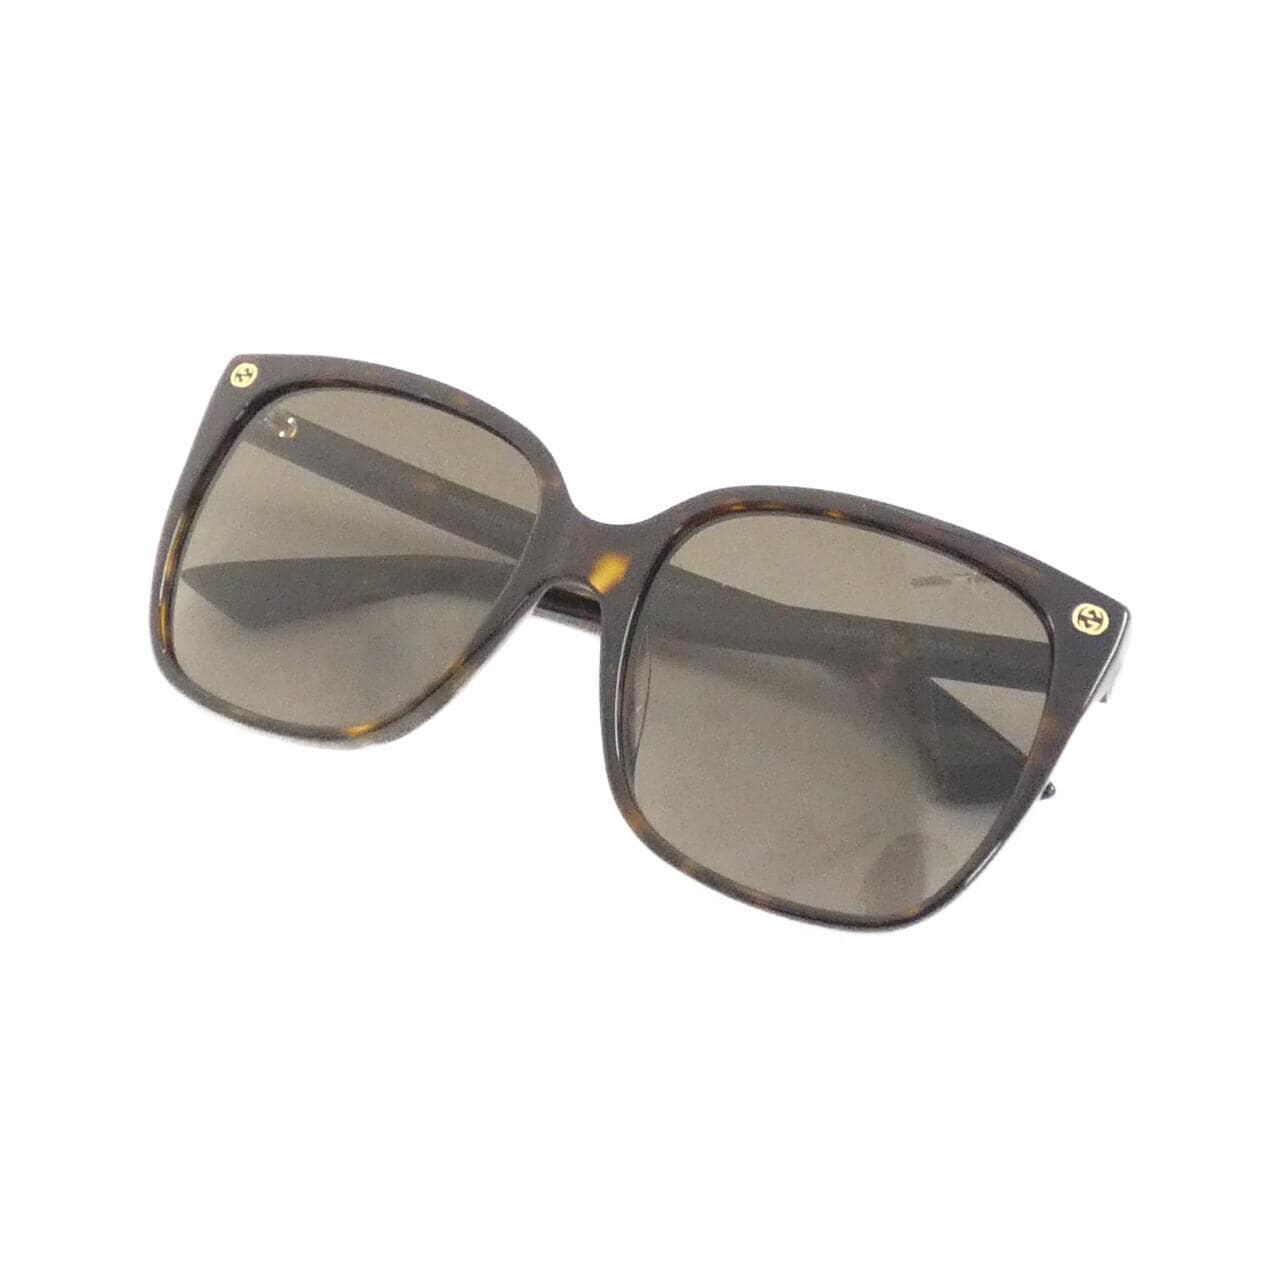 [BRAND NEW] Gucci 0022S Sunglasses